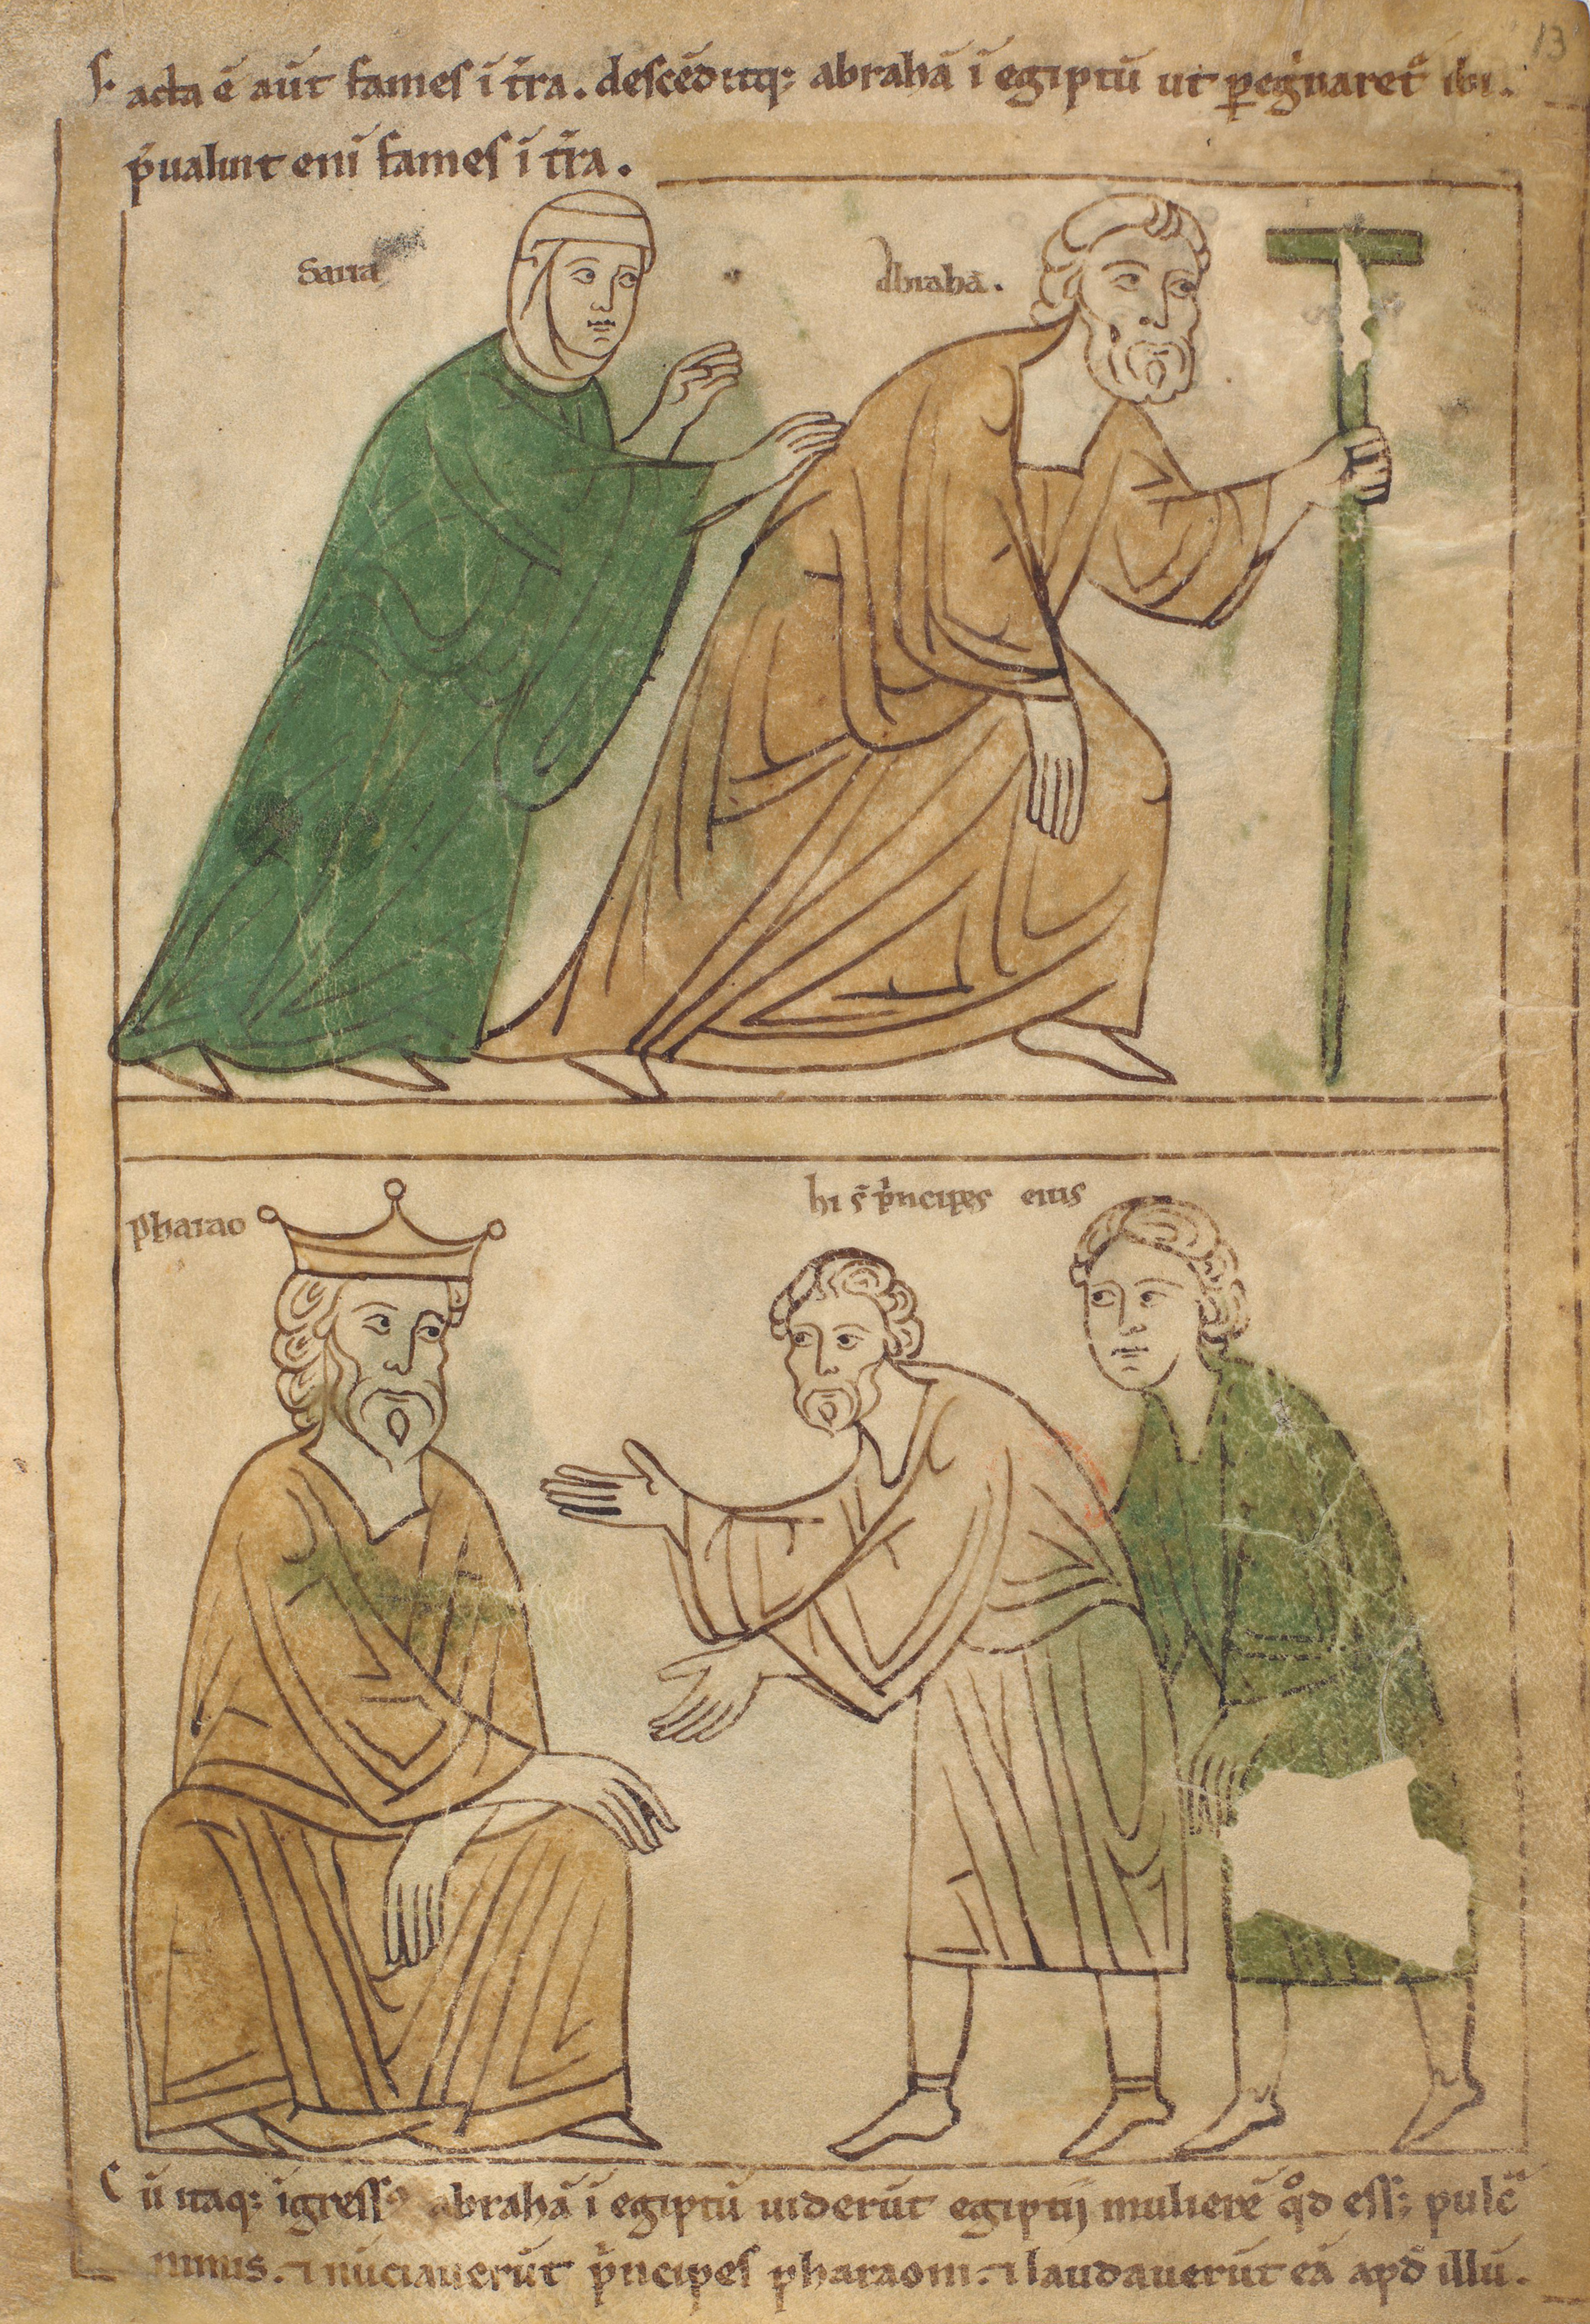 Seconde Bible de Pampelune, folio 13r – Abram et Sara descendent en Égypte pour fuir la famine (Gn 12, 10). Abram et Sara demandent l’hospitalité à Pharaon (Gn 12, 11-16).